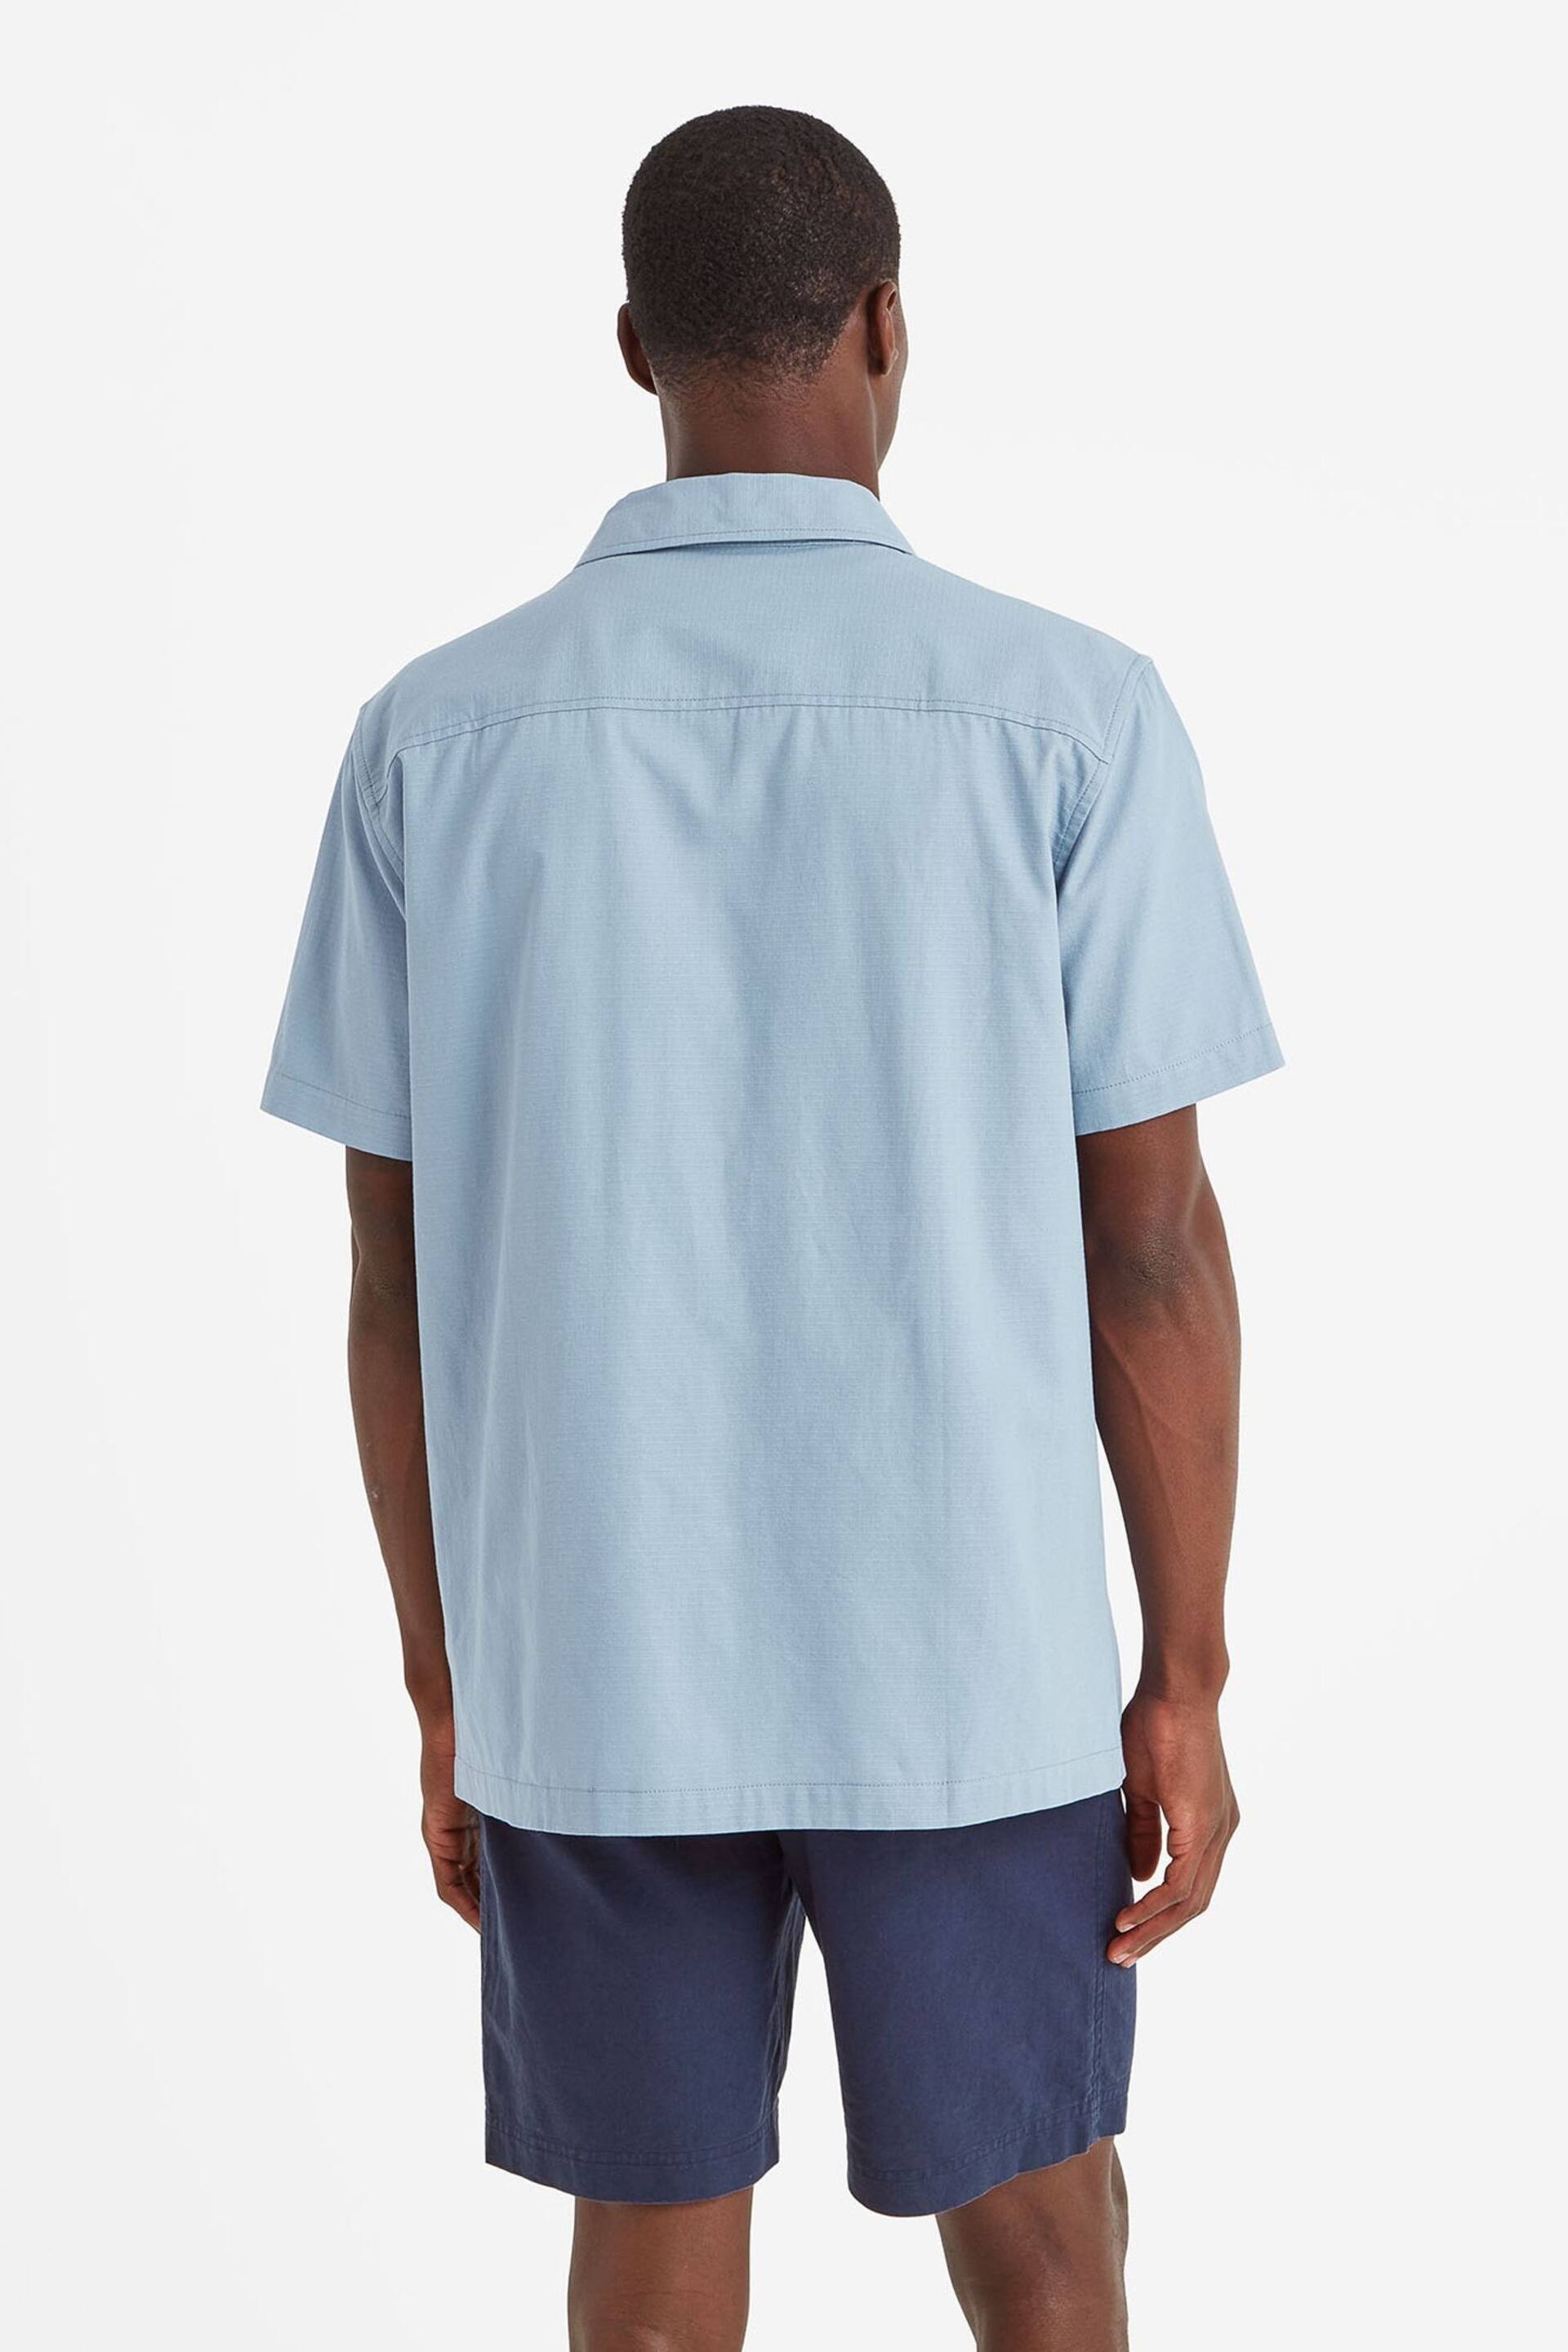 Tog 24 Blue Cody Short Sleeve Shirt - Image 2 of 4